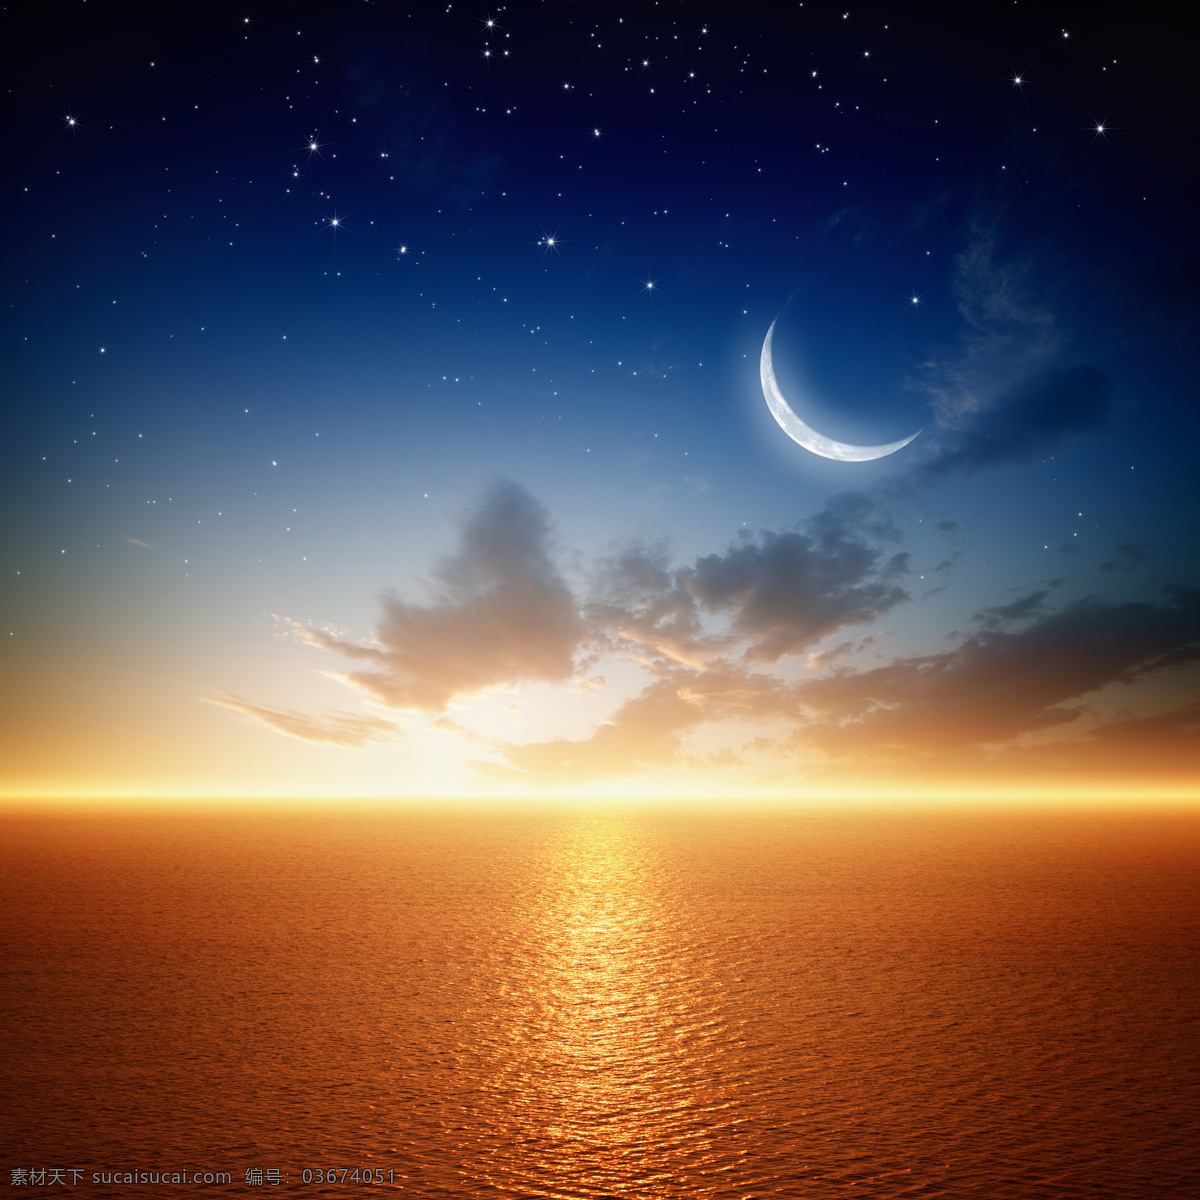 月亮 下 大海 黄昏 落日 风景 自然美景 大海图片 风景图片